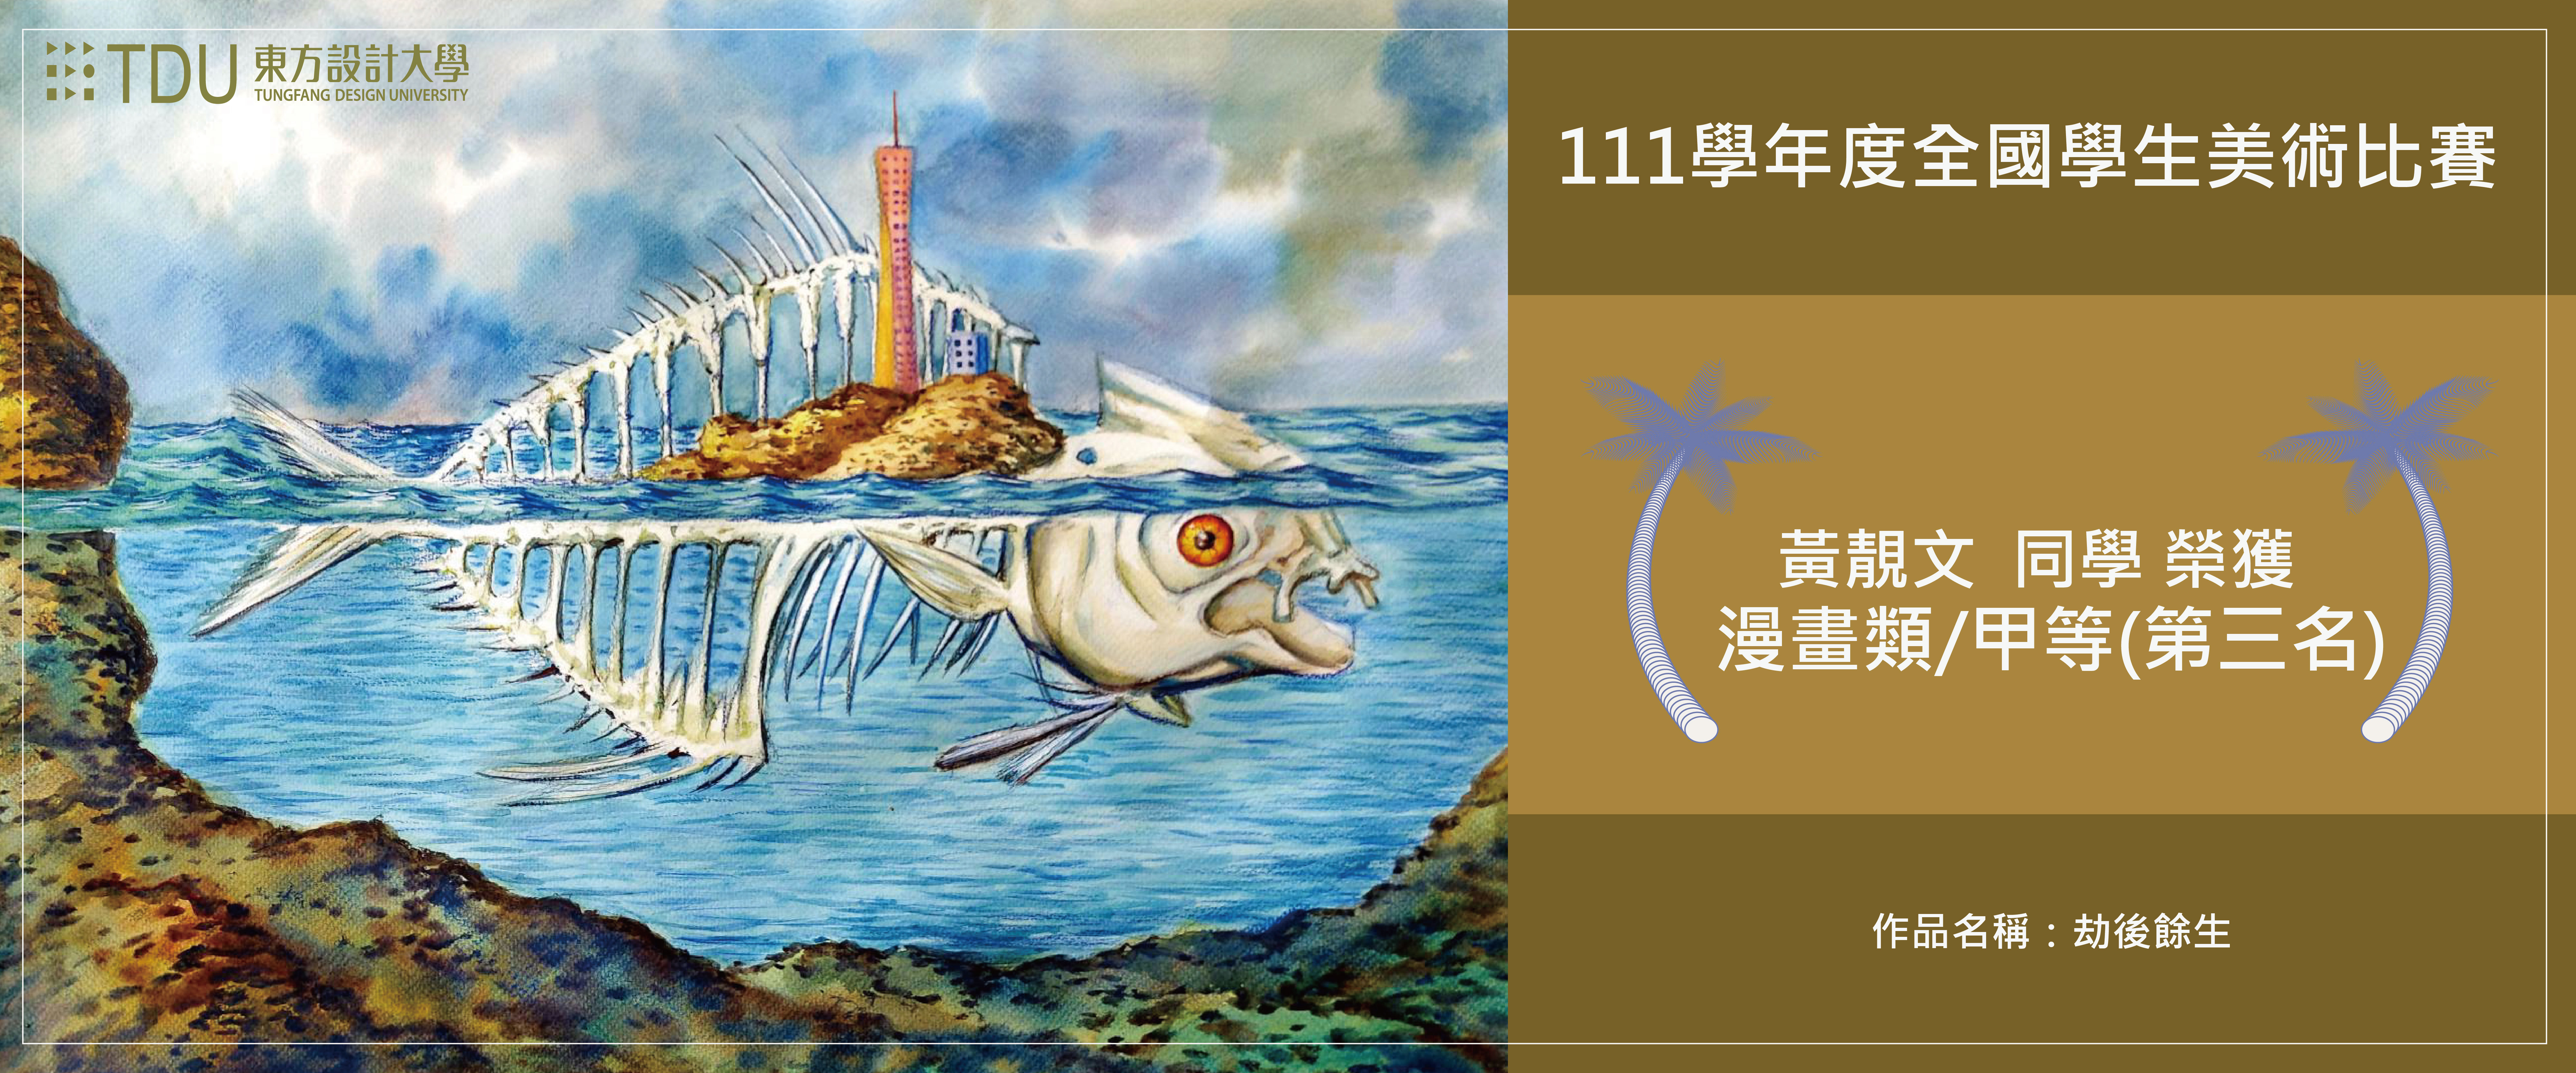 111招生訊息網頁-111美工全國得獎漫畫-01-01.jpg